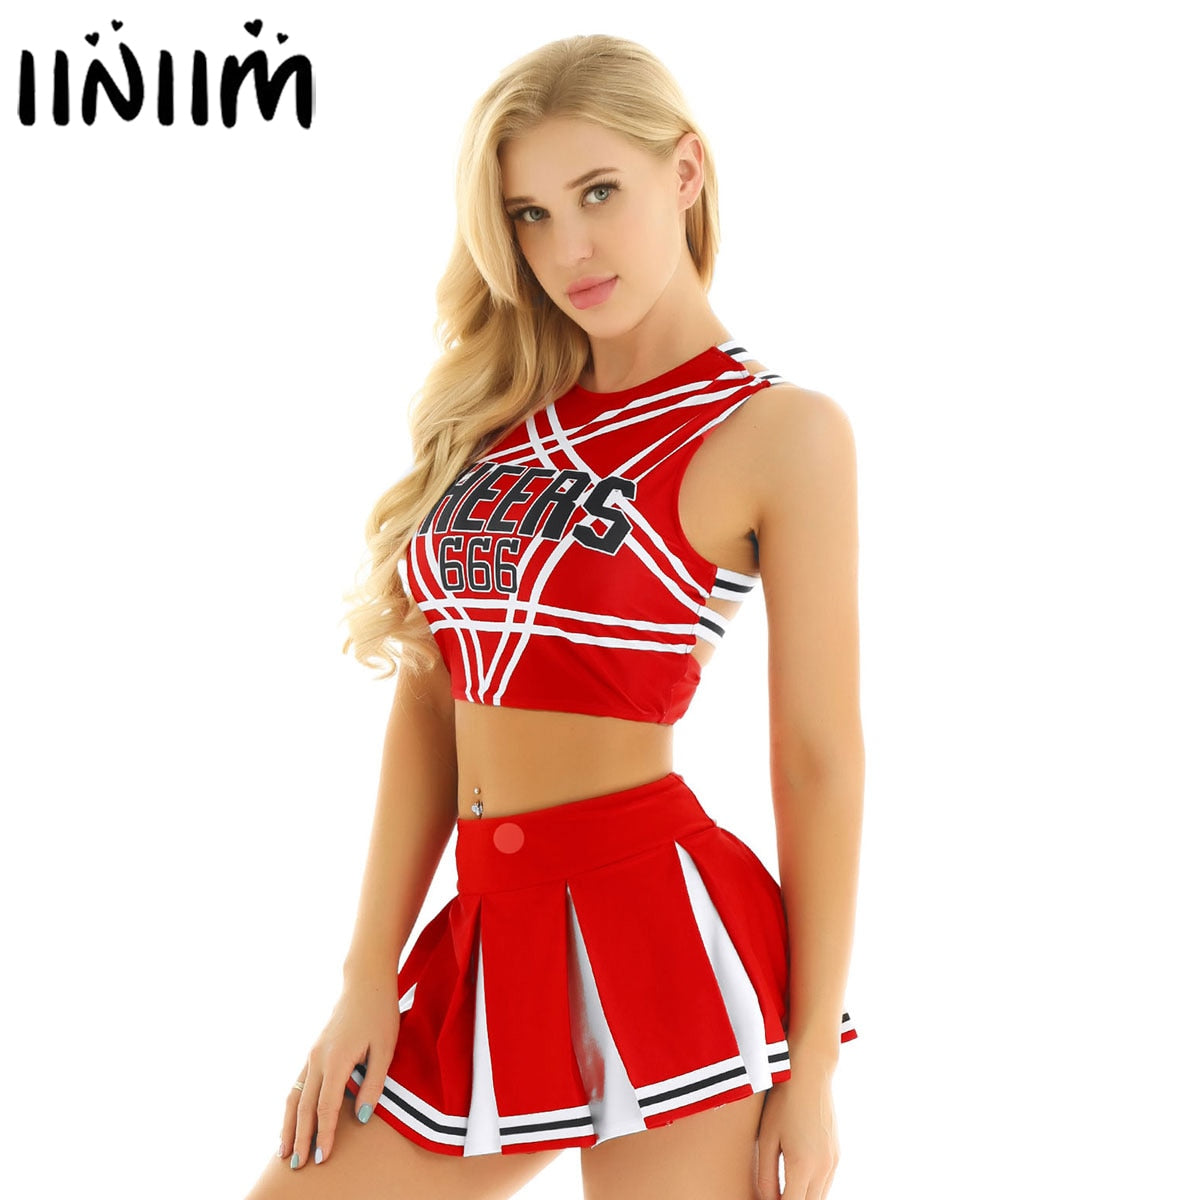 US/UK Japanischen Schülerin Cosplay Uniform Mädchen Sexy Dessous Gleeing Cheerleader Kostüm Set Halloween Kostüm tif-shop24.de